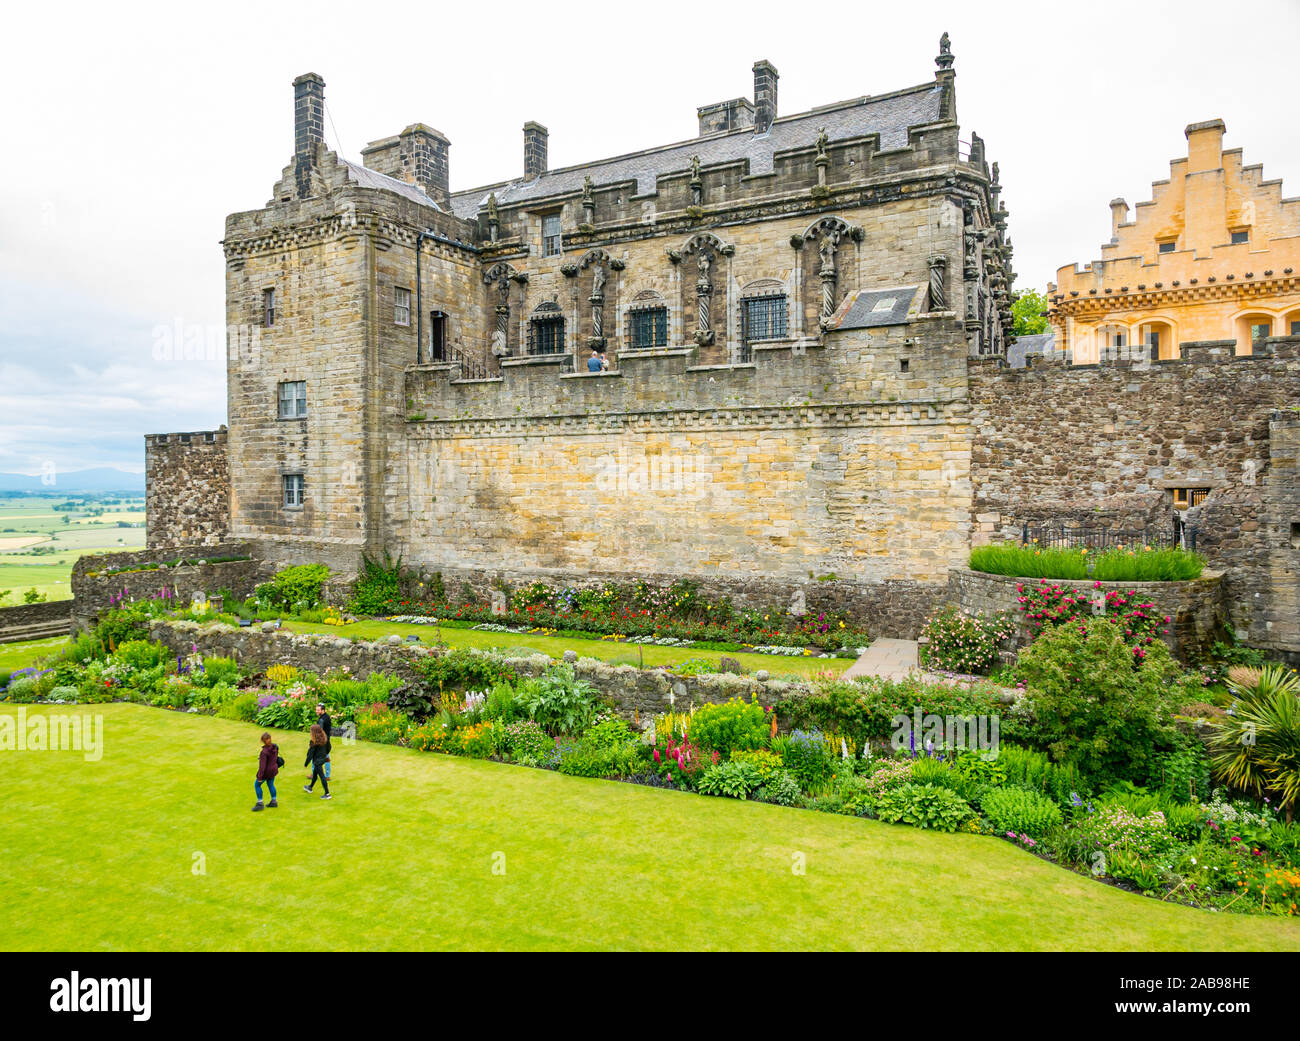 Les gens qui marchent dans le jardin du palais de la Reine Anne et avec grande salle, le château de Stirling, Écosse, Royaume-Uni Banque D'Images